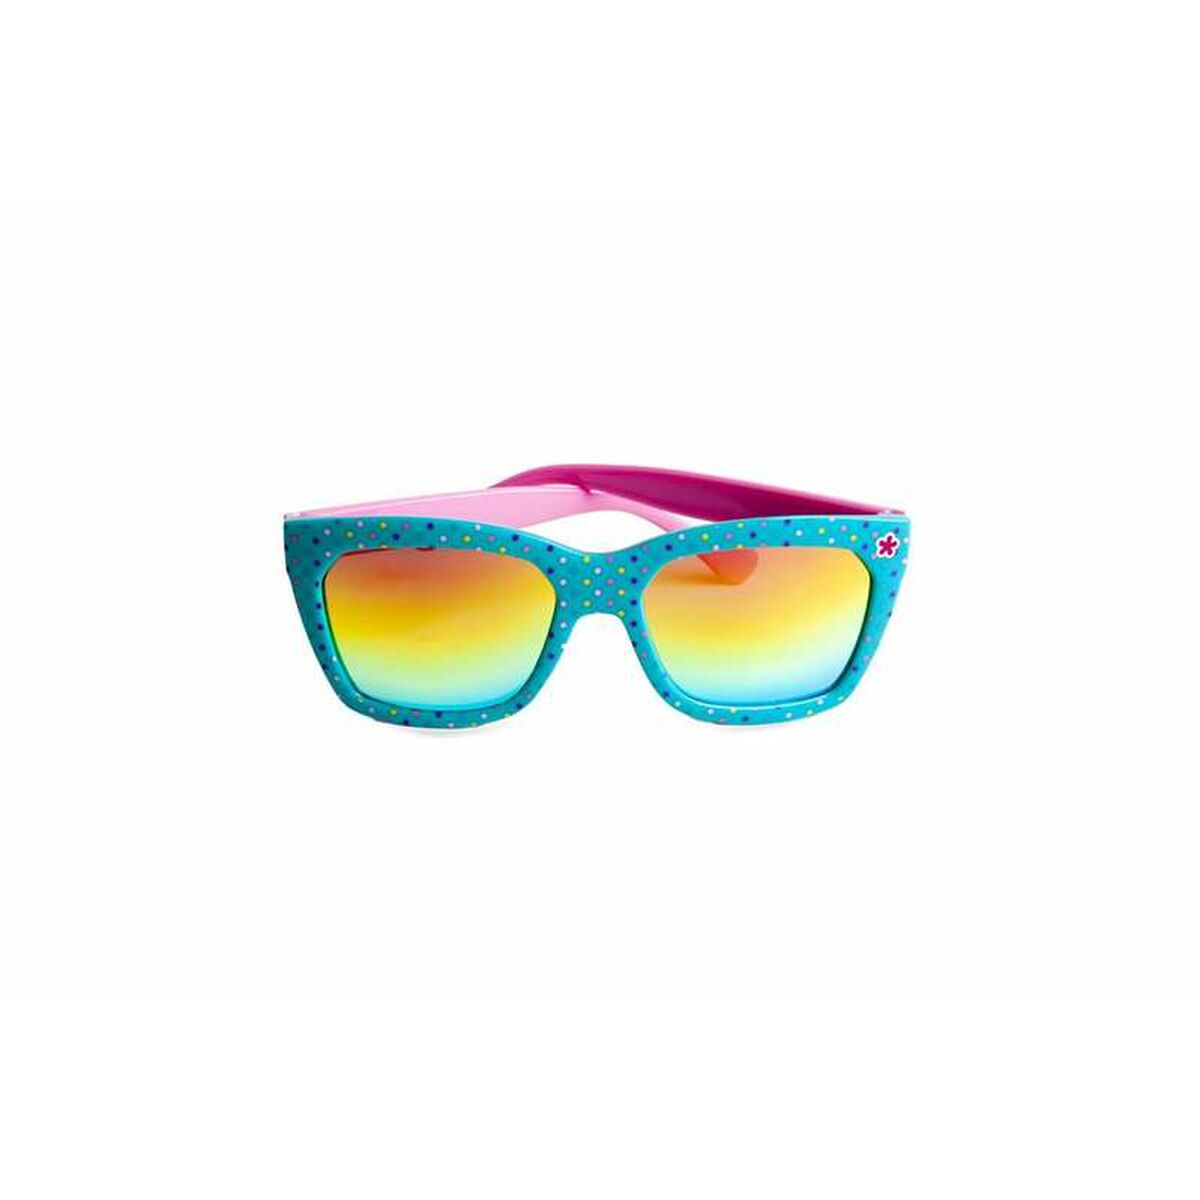 Kindersonnenbrille Martinelia Regenbogen